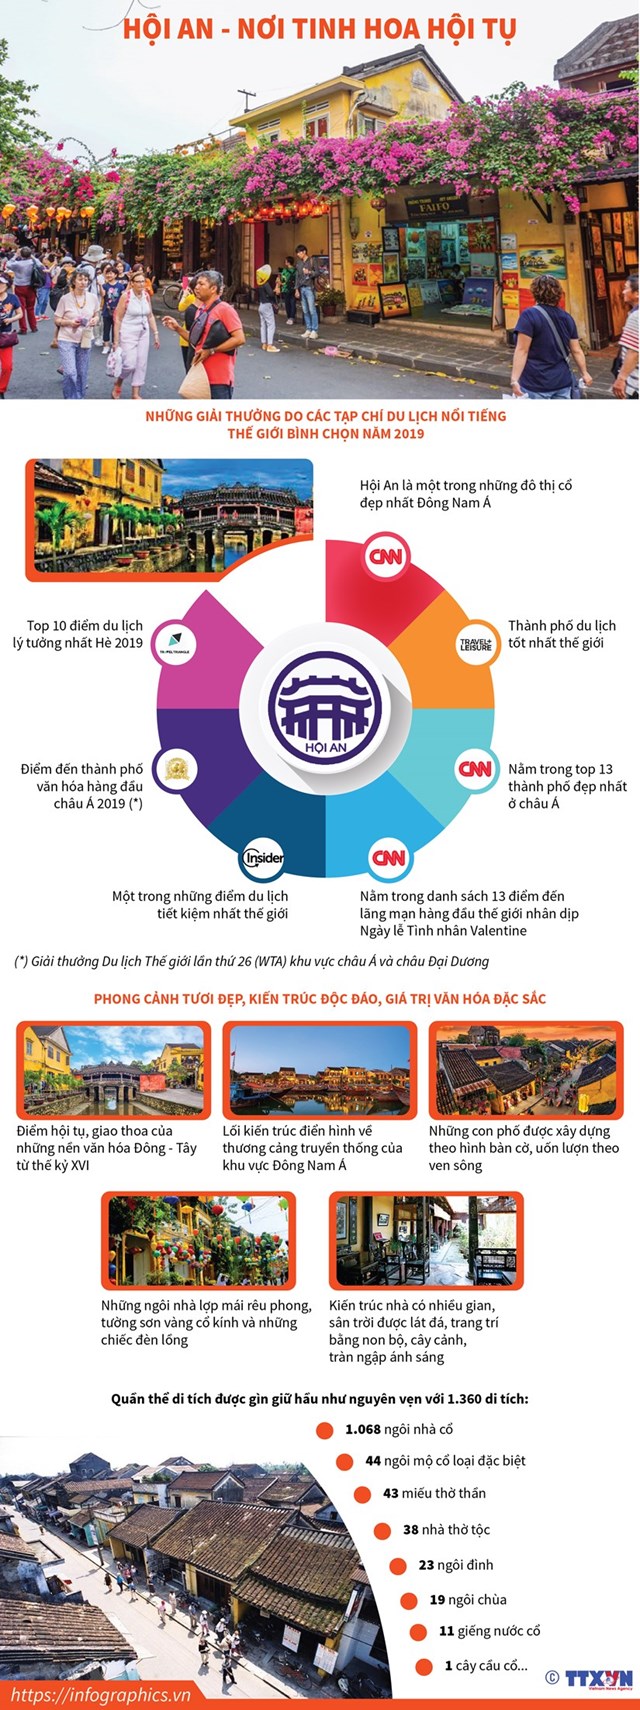 [Infographics] Di sản văn hóa Hội An - nơi tinh hoa văn hóa hội tụ - Ảnh 1